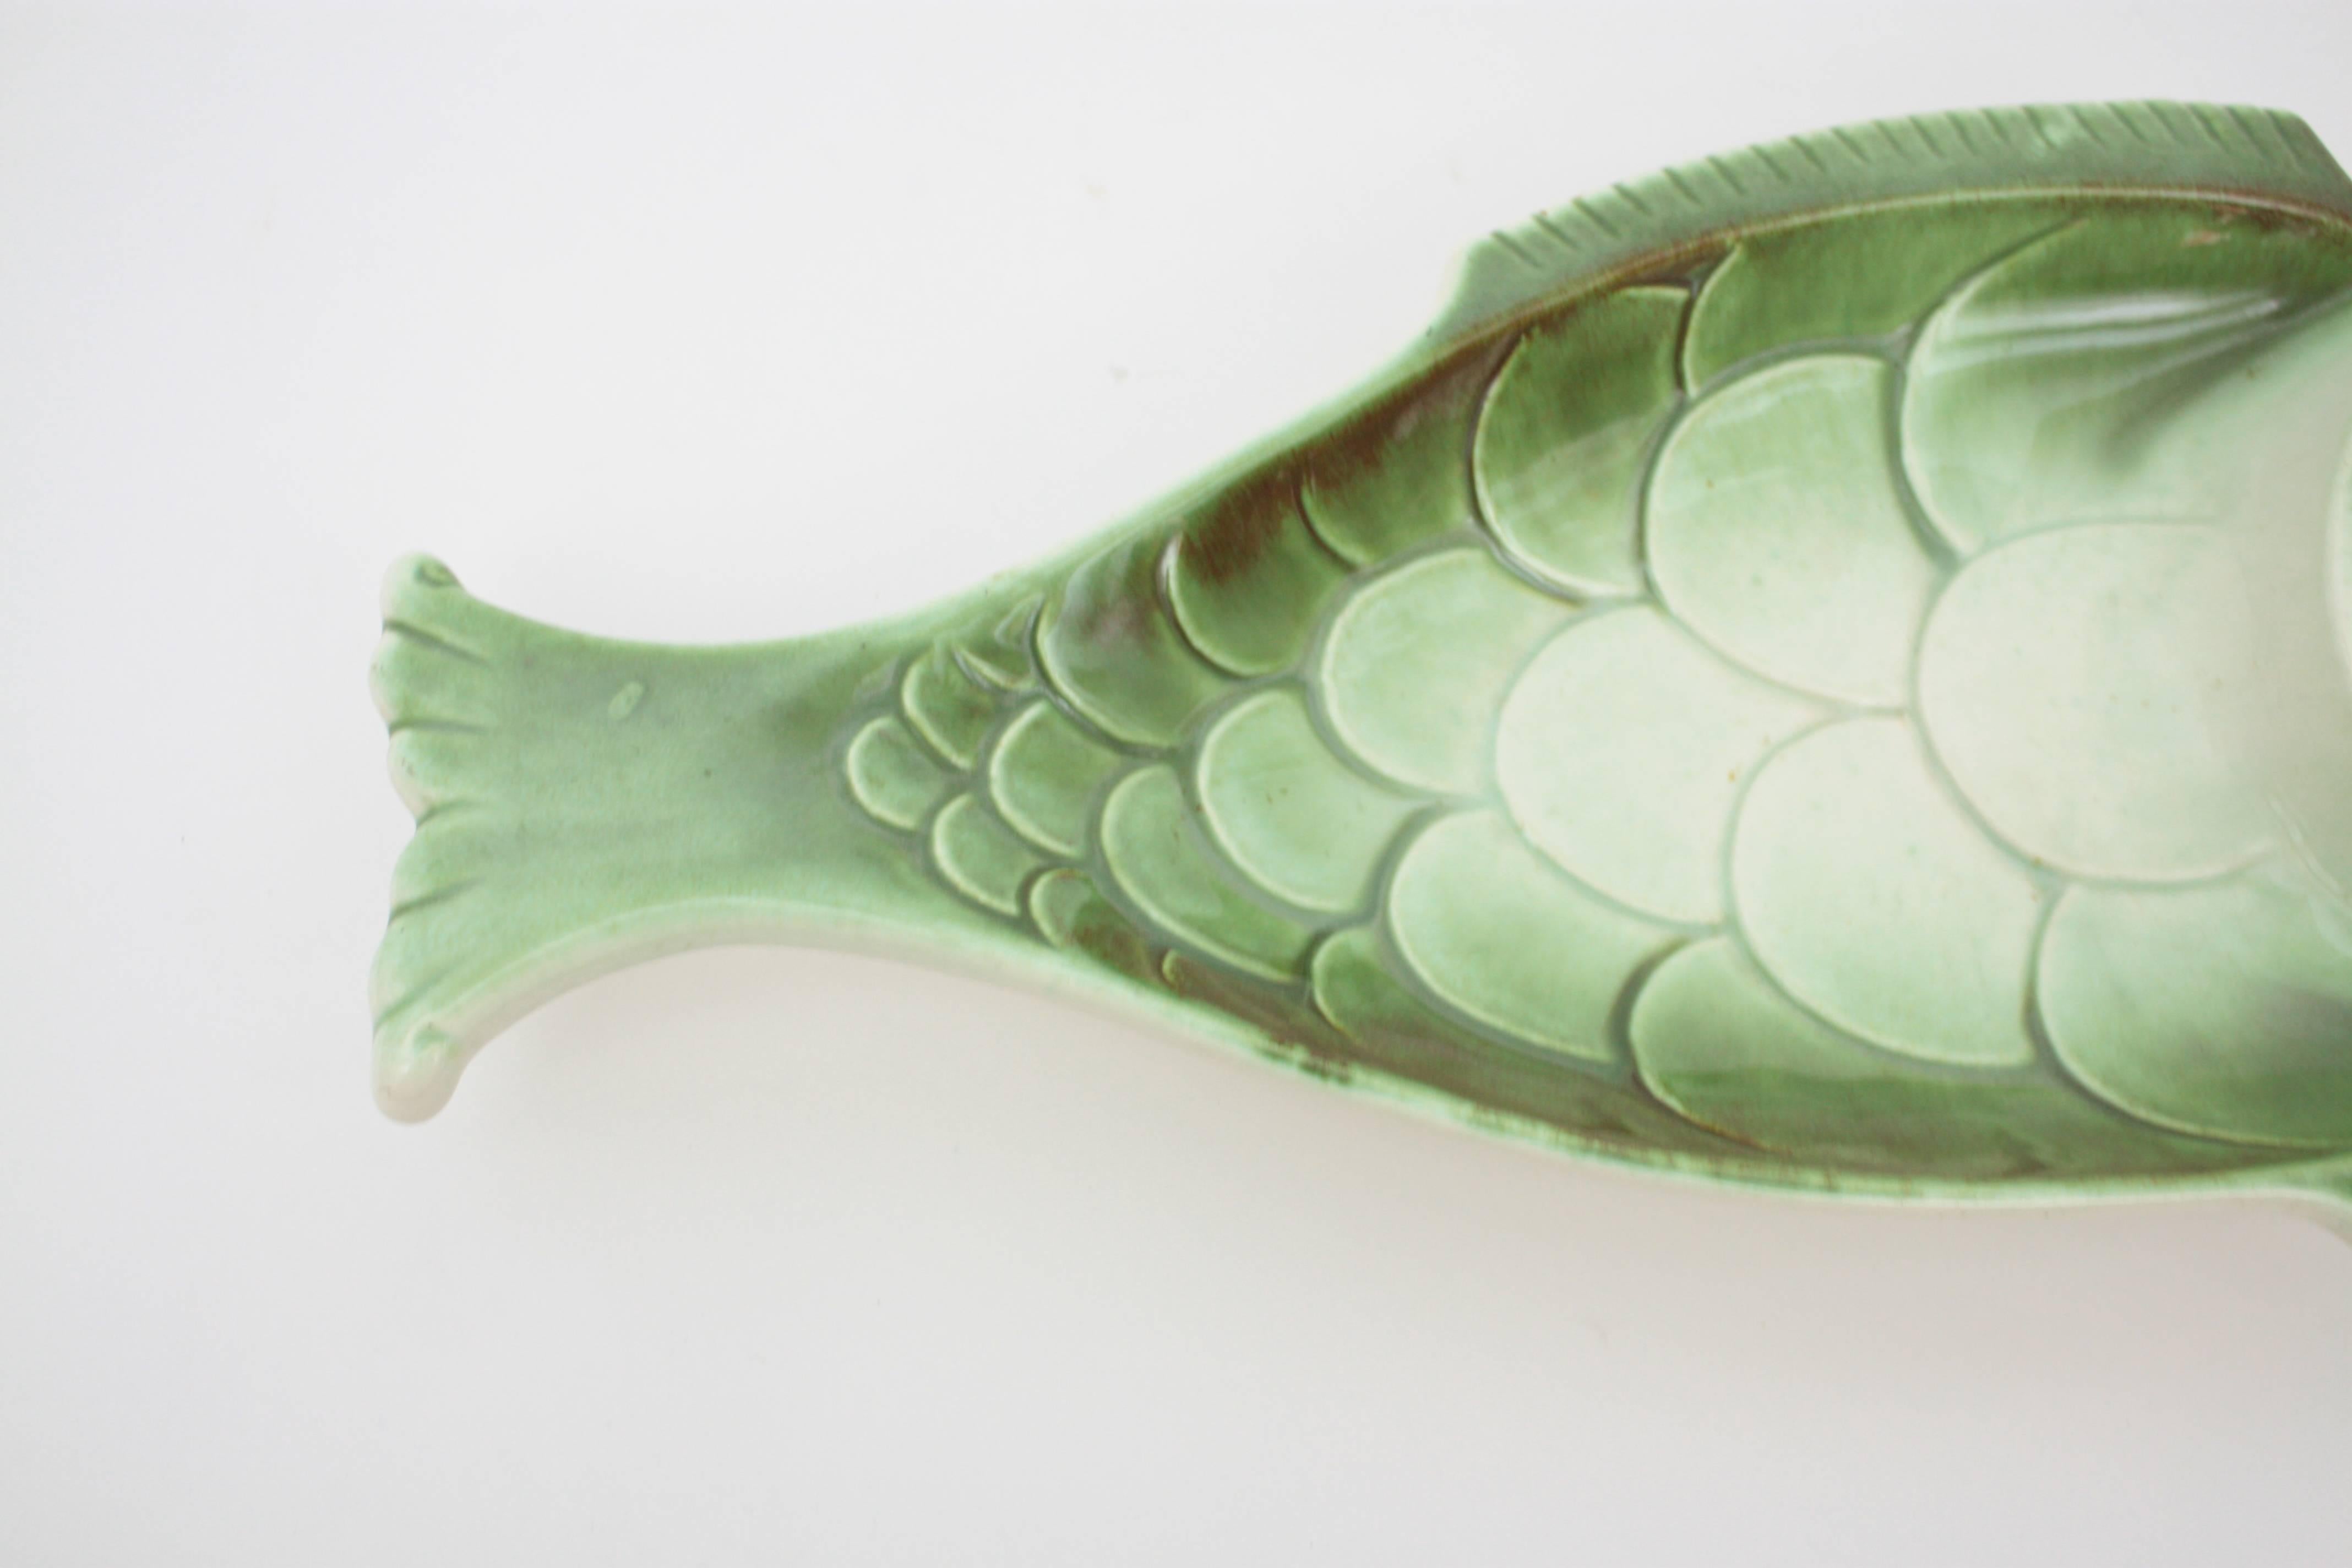 fish platter ceramic